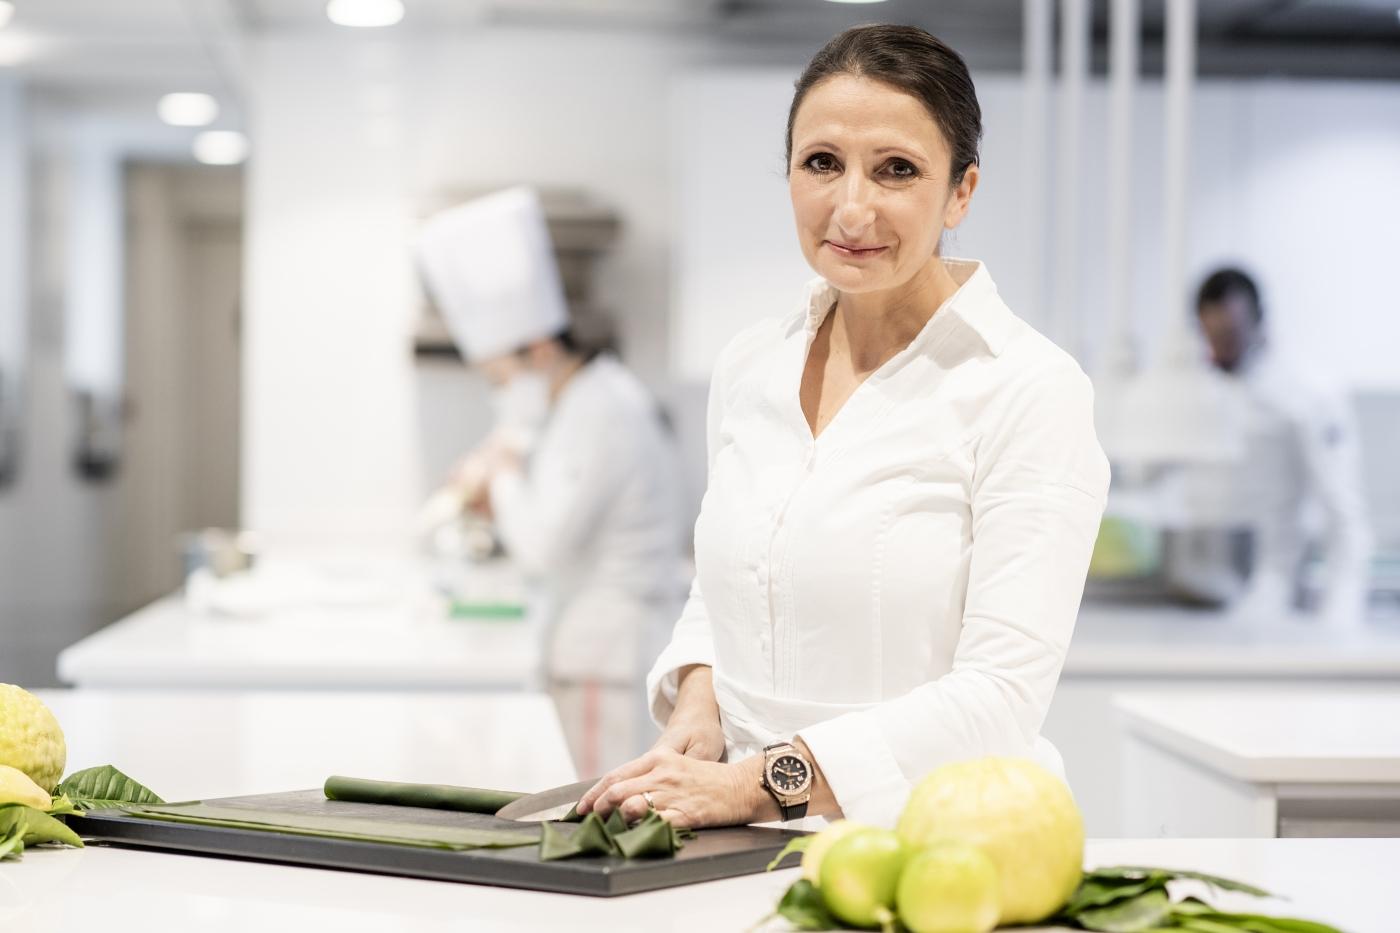 宇舶表任命全球拥有最多米其林星的女厨师担任品牌大使